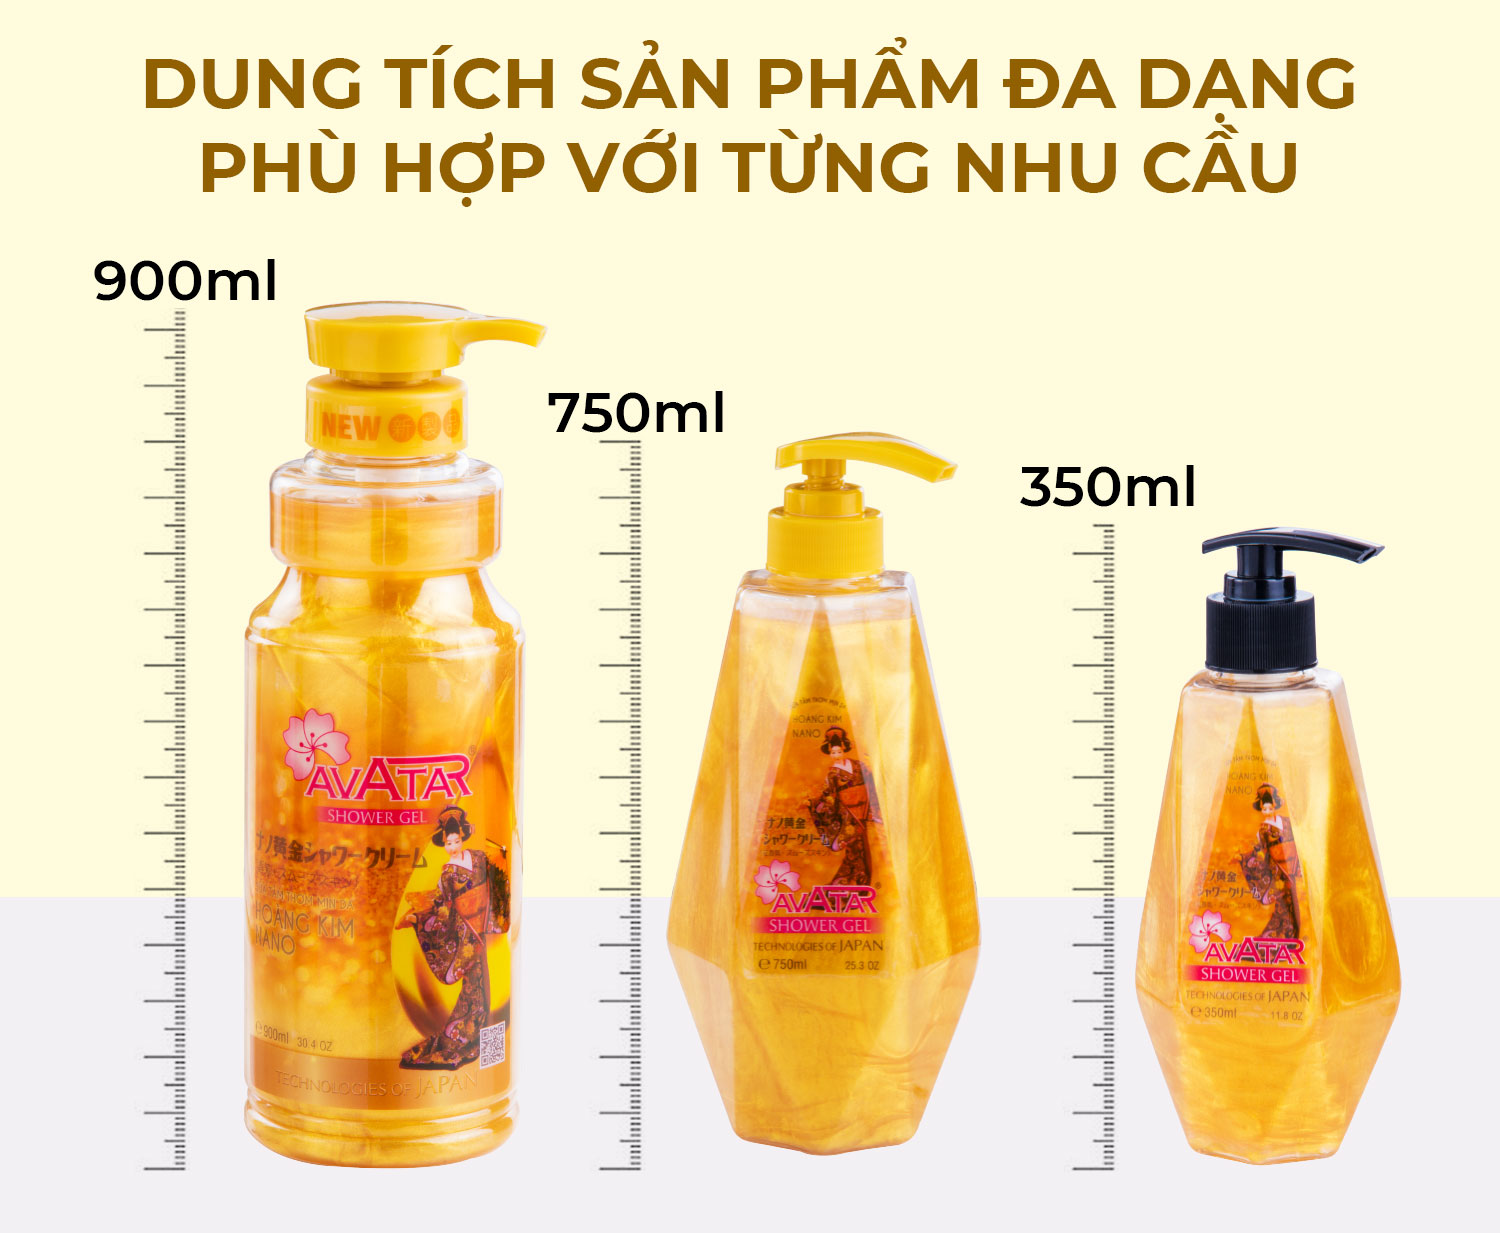 Sữa tắm Hoàng Kim Nano Avatar 350ml - giảm thiểu hắc tố cho làn da sáng đều màu (thích hợp cho cả gia đình)